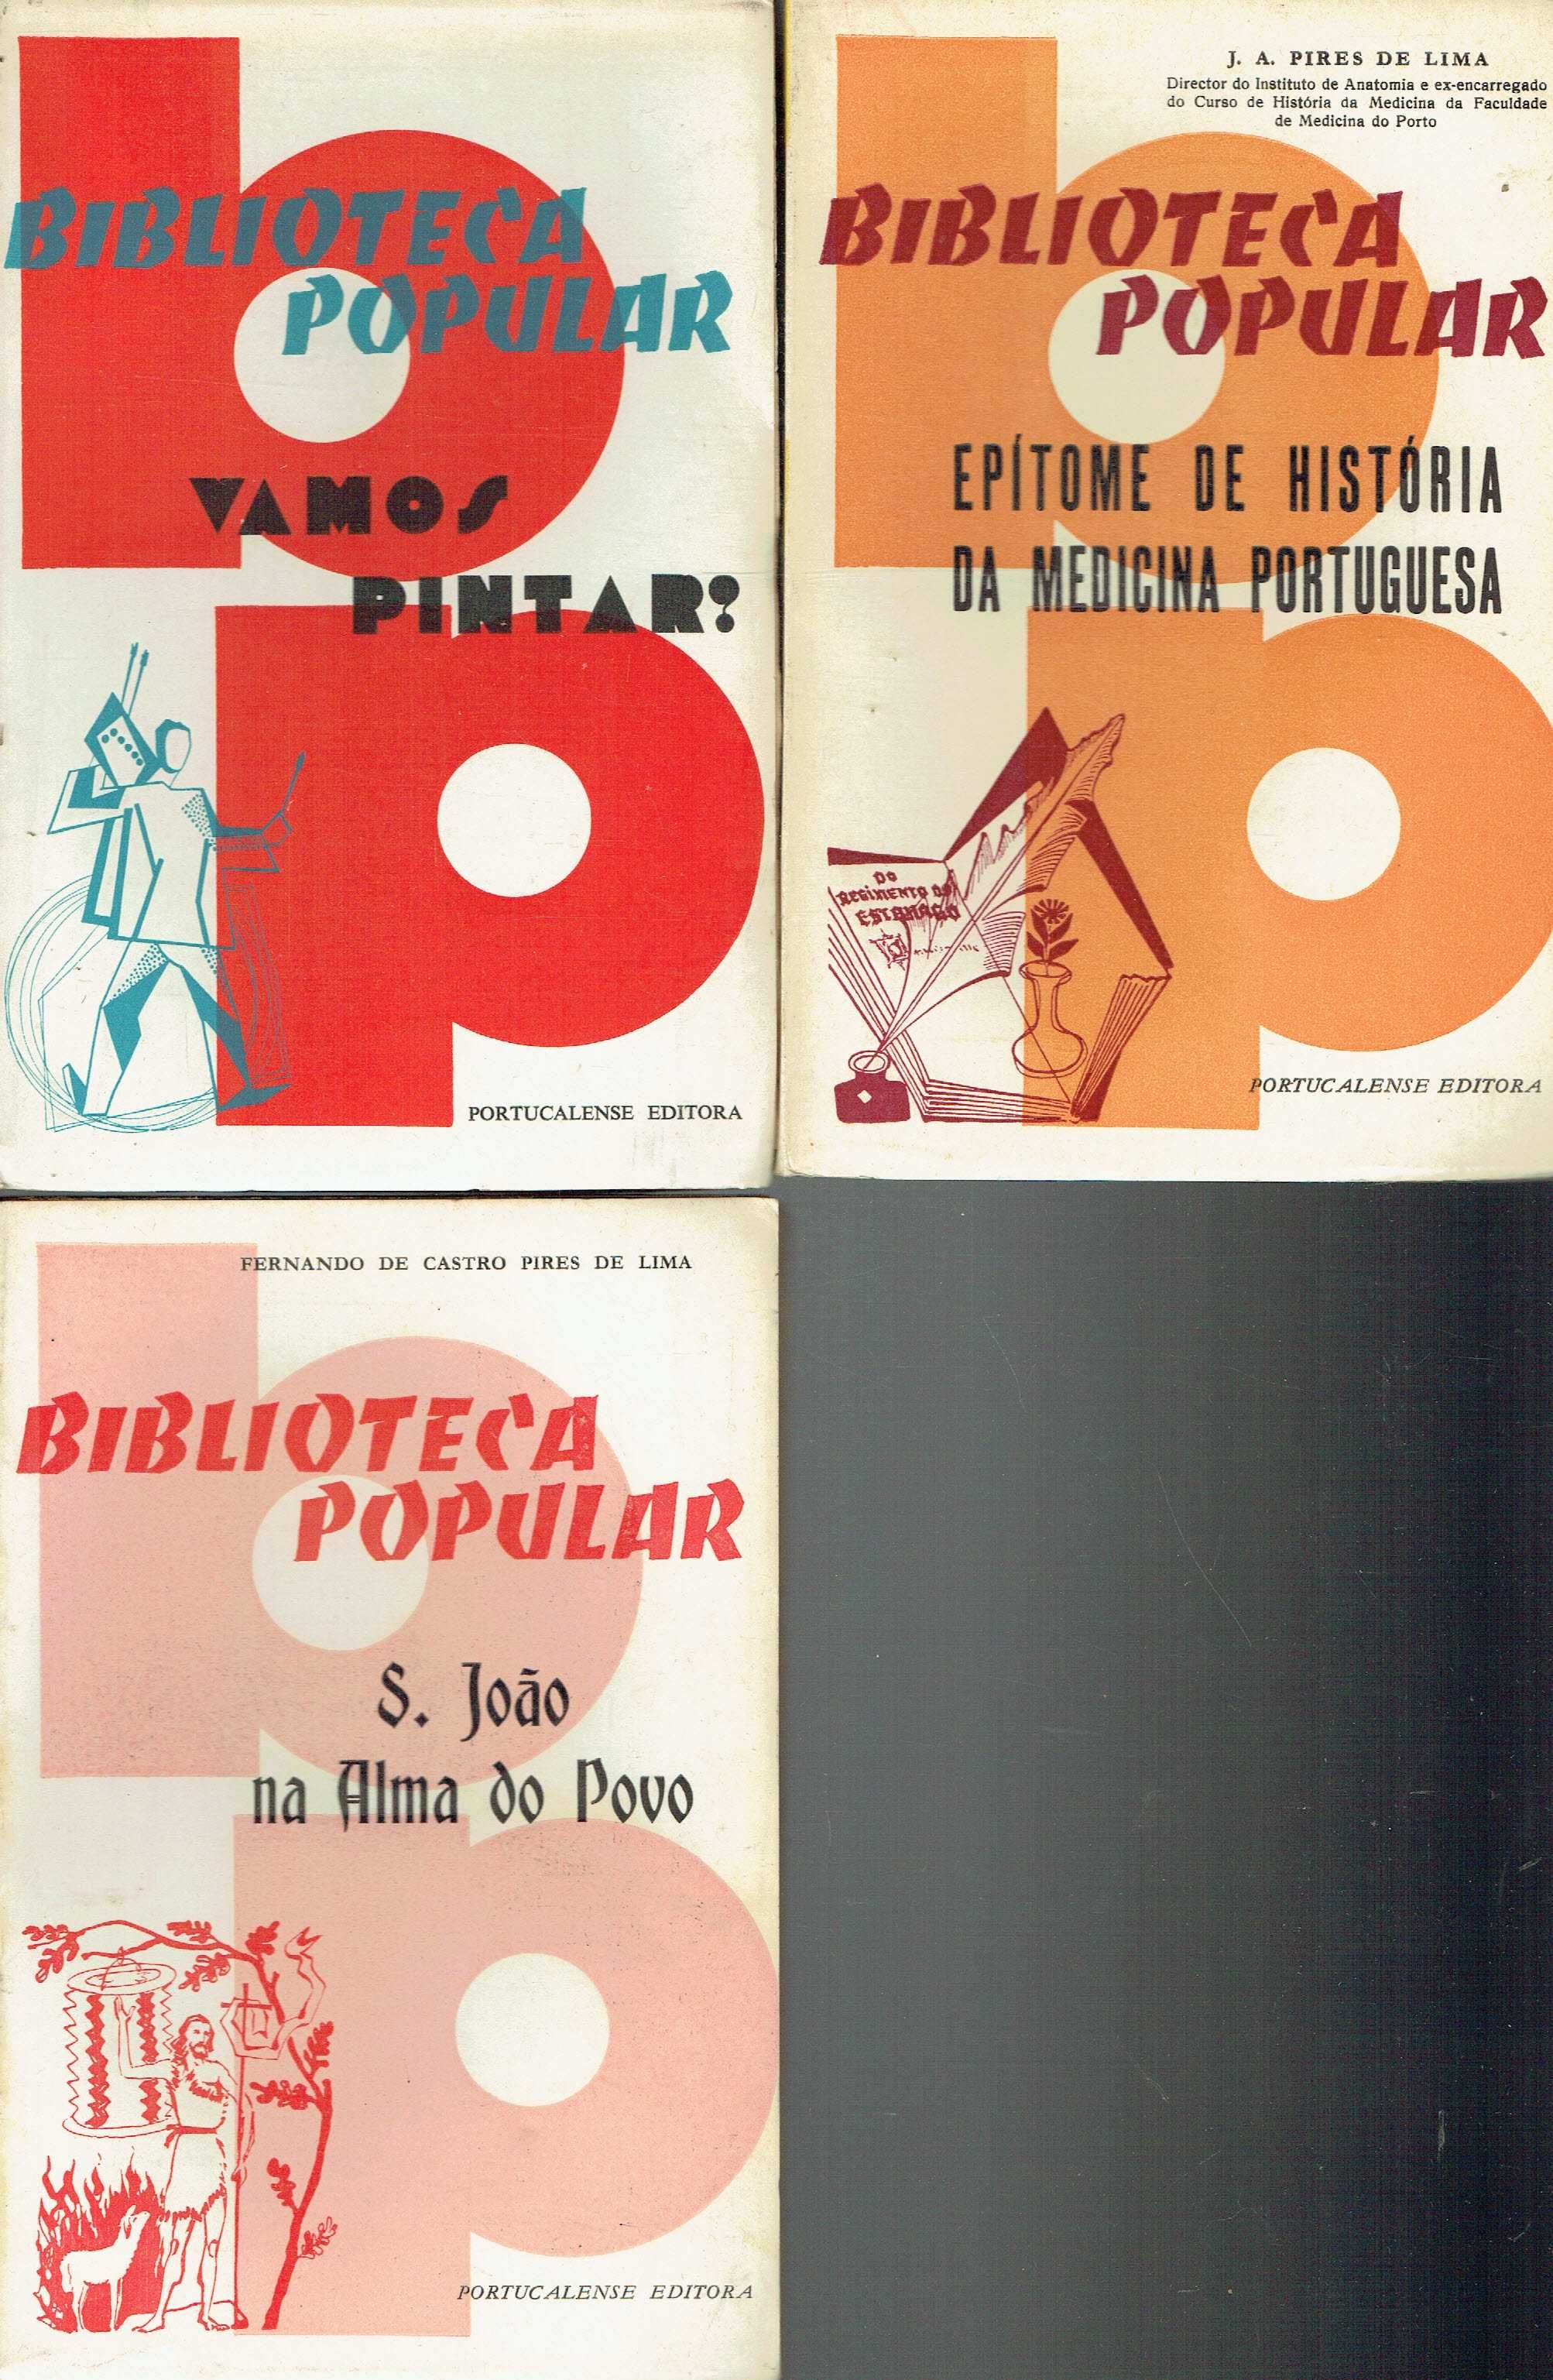 15003

Coleção Biblioteca Popular

Portucalense Editora